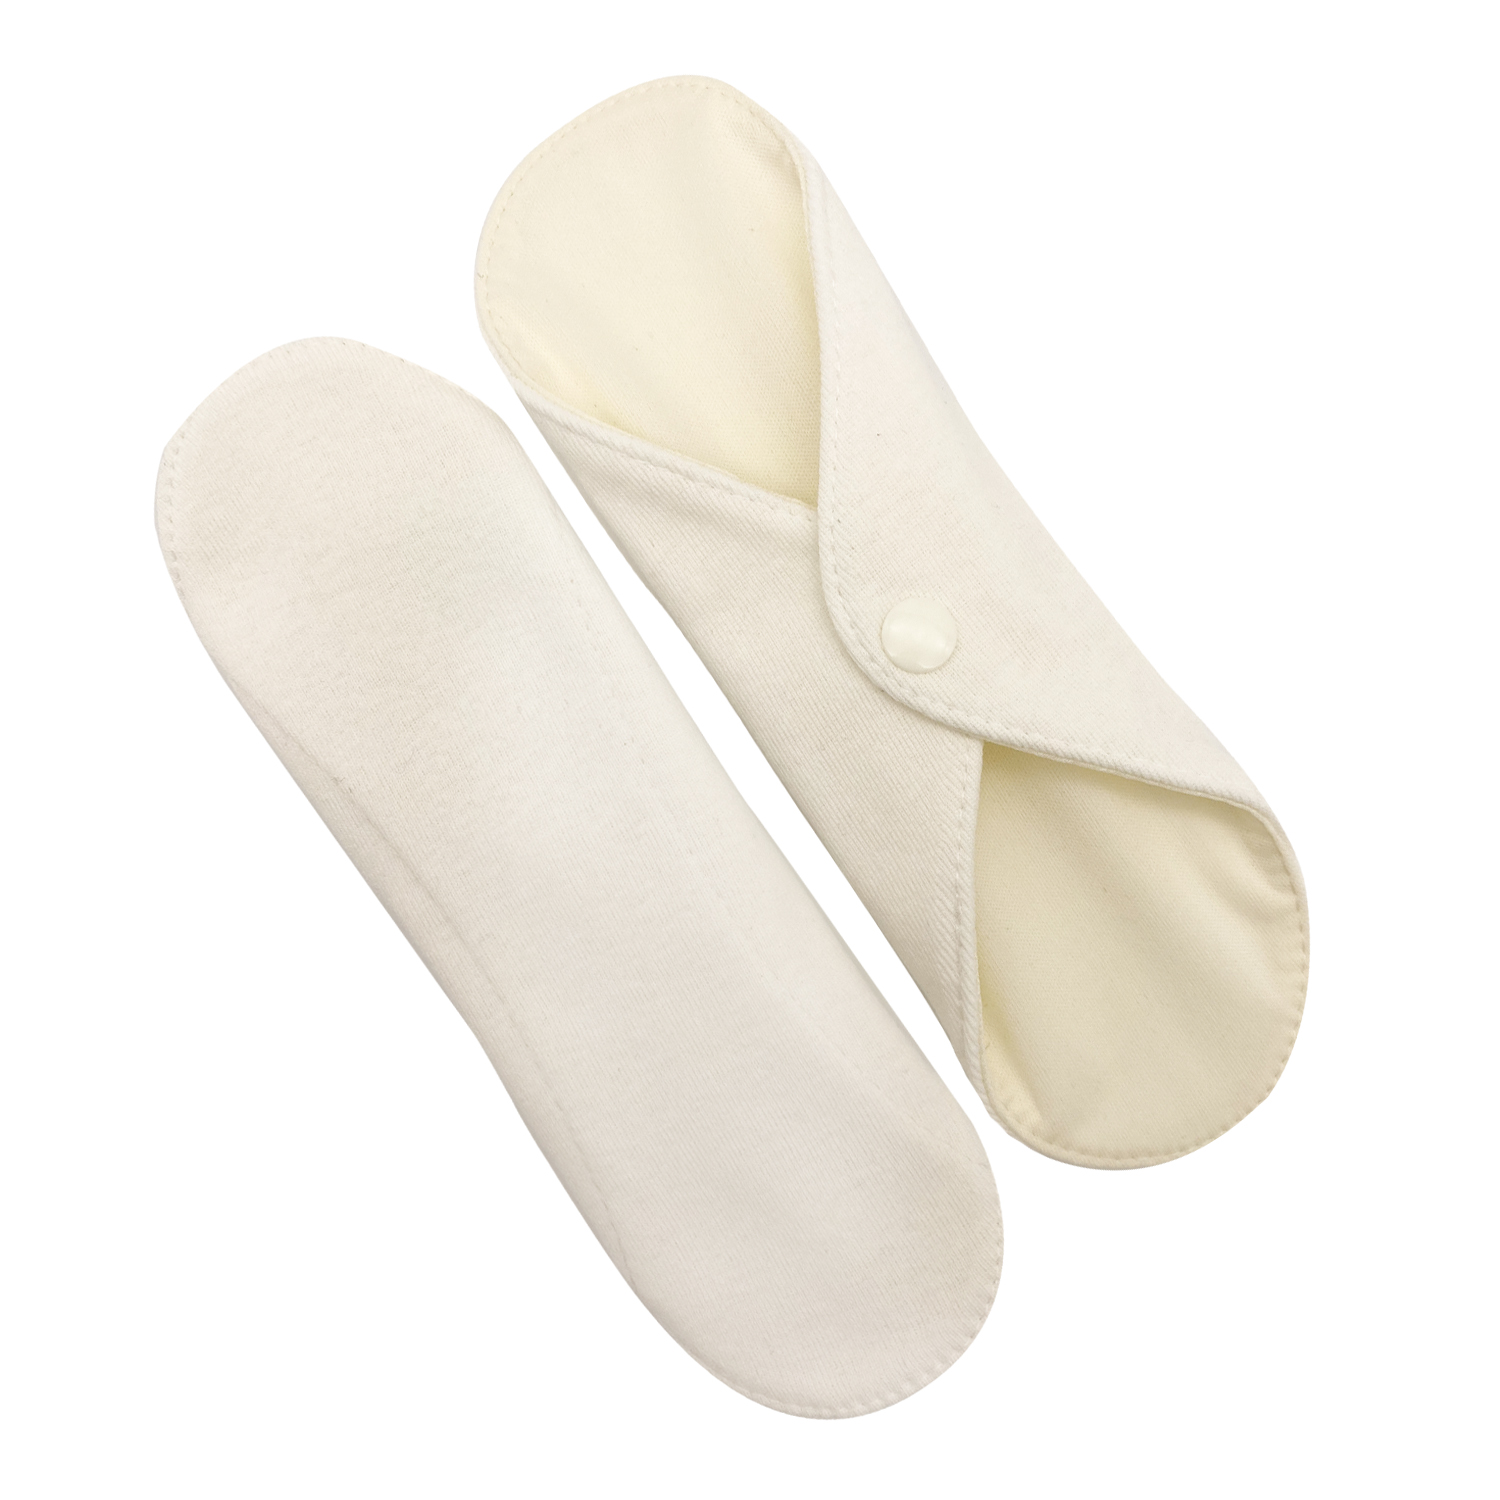 Прокладки для менструации многоразовые Mamalino бежевые набор 2 шт. размер Миди комплект подушек для стула билли размер 37х42 см серо бежевый 2 шт